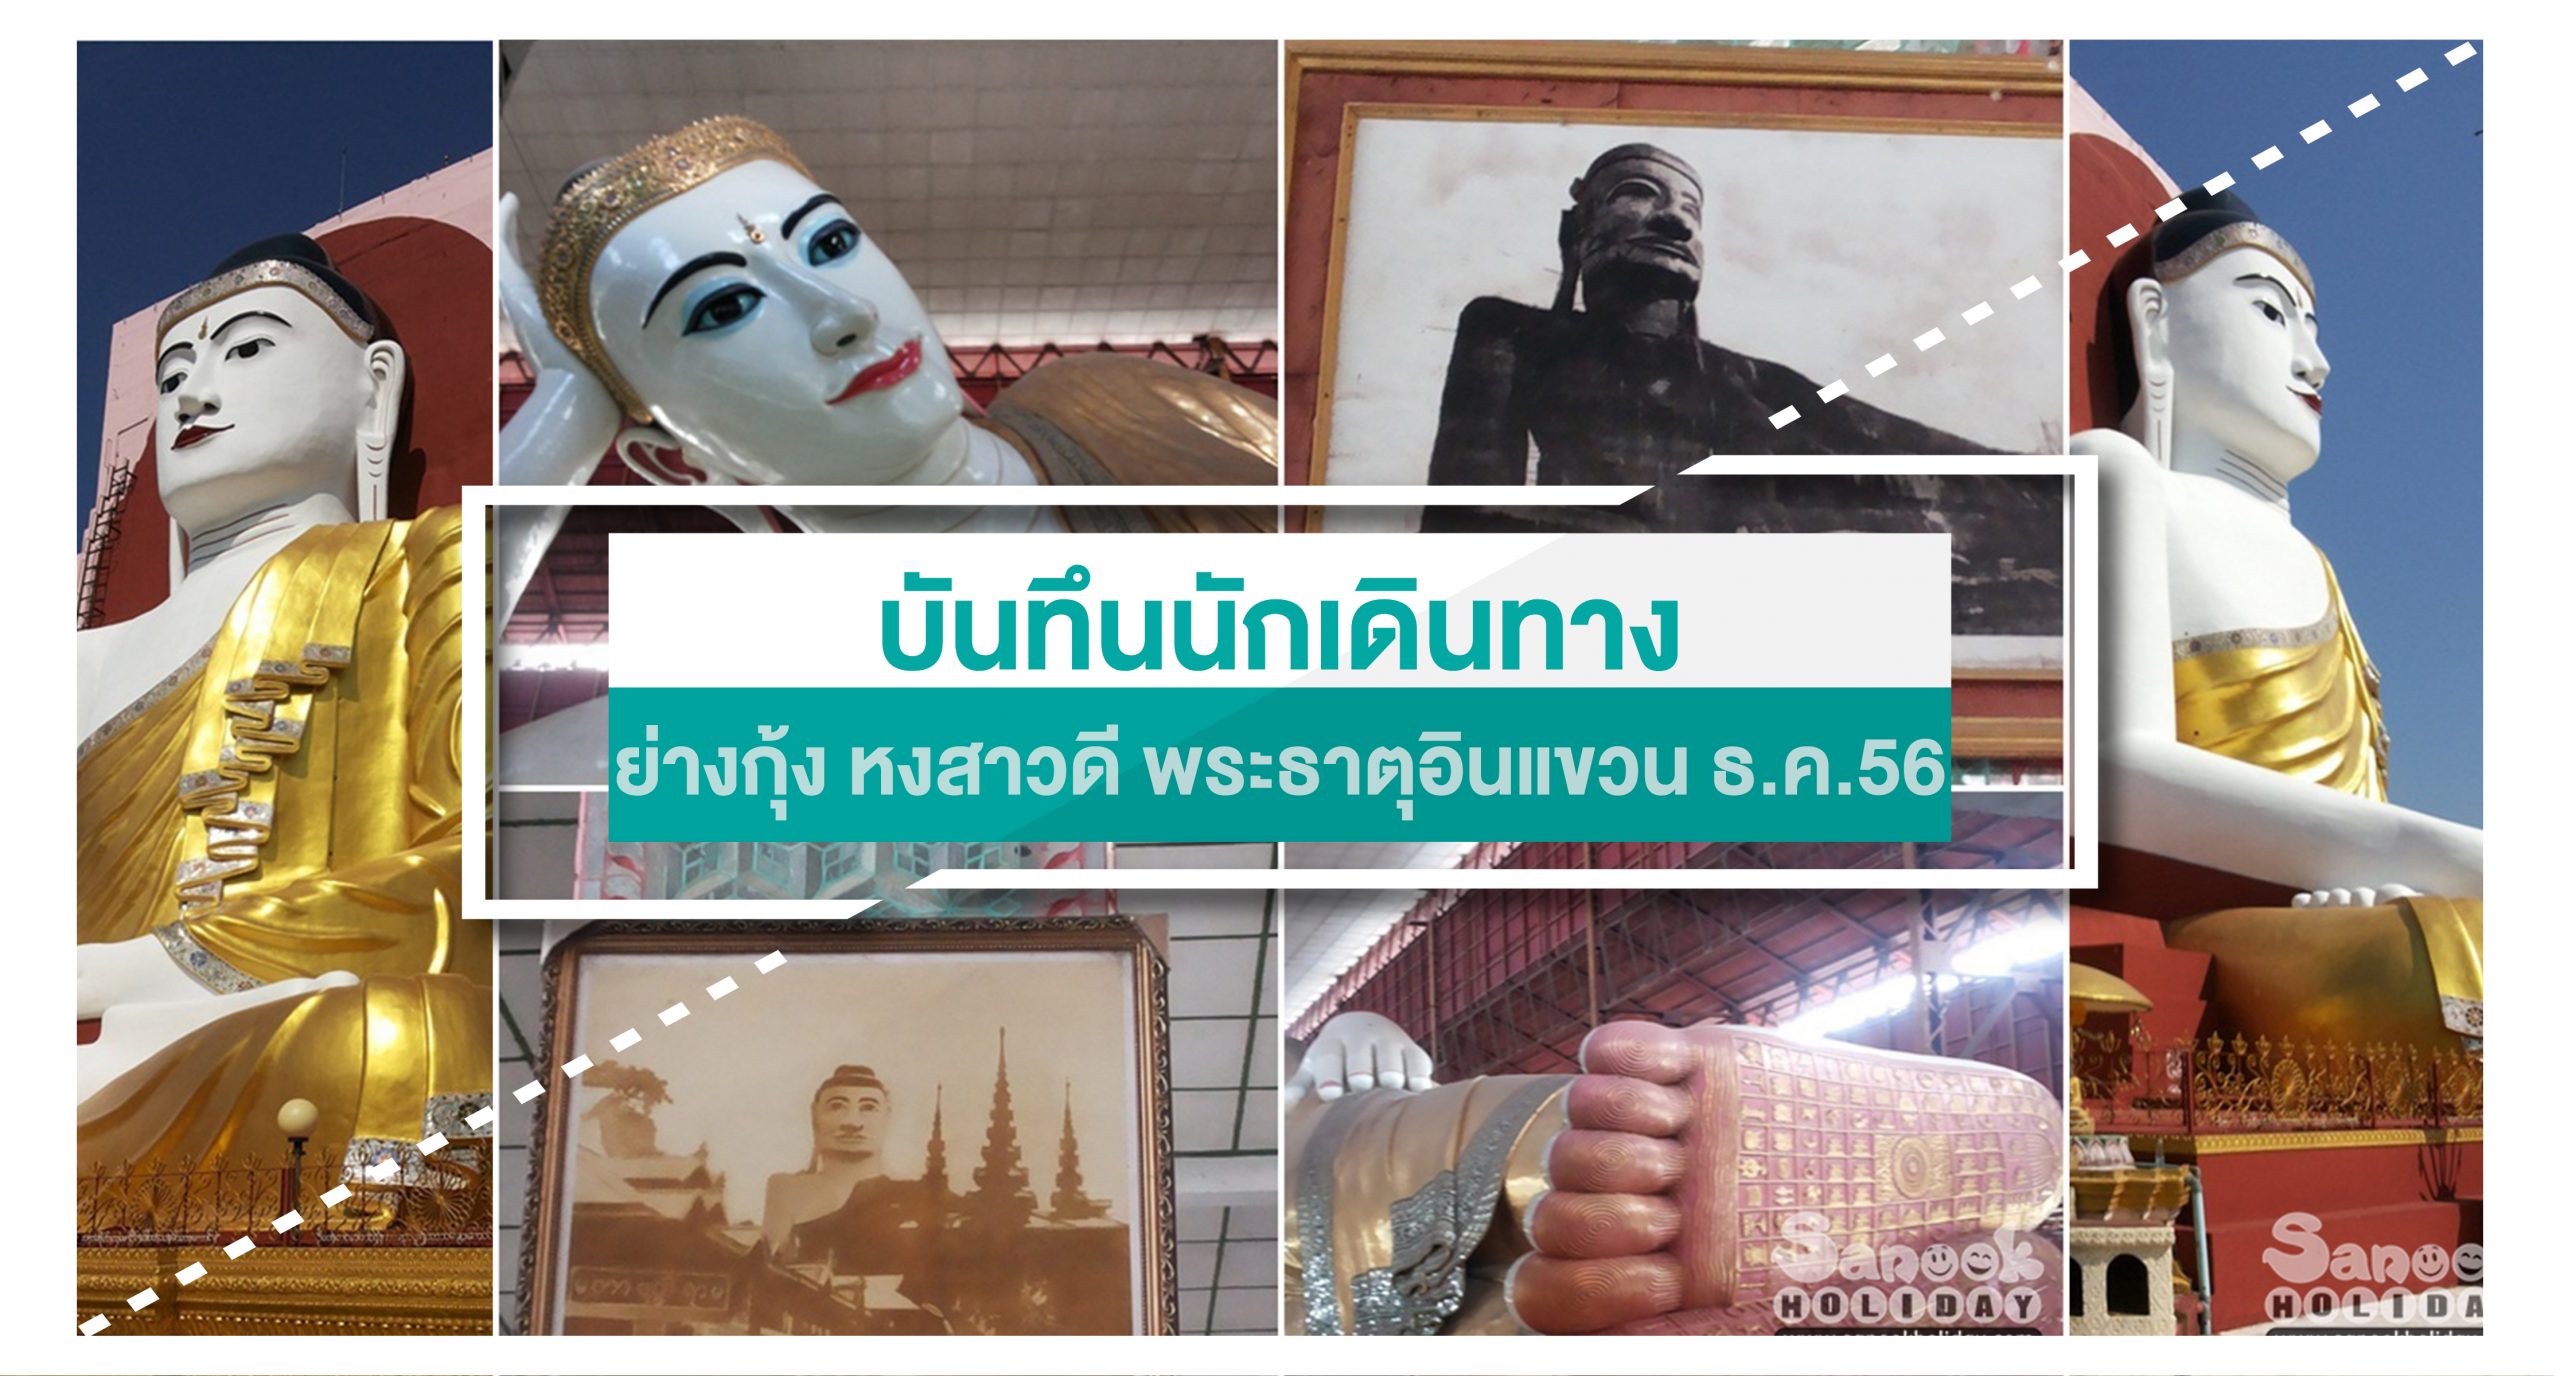 เที่ยวพม่า ย่างกุ้ง หงสา พระธาตุอินทร์แขวน 7-10 ธันวาคม 2556